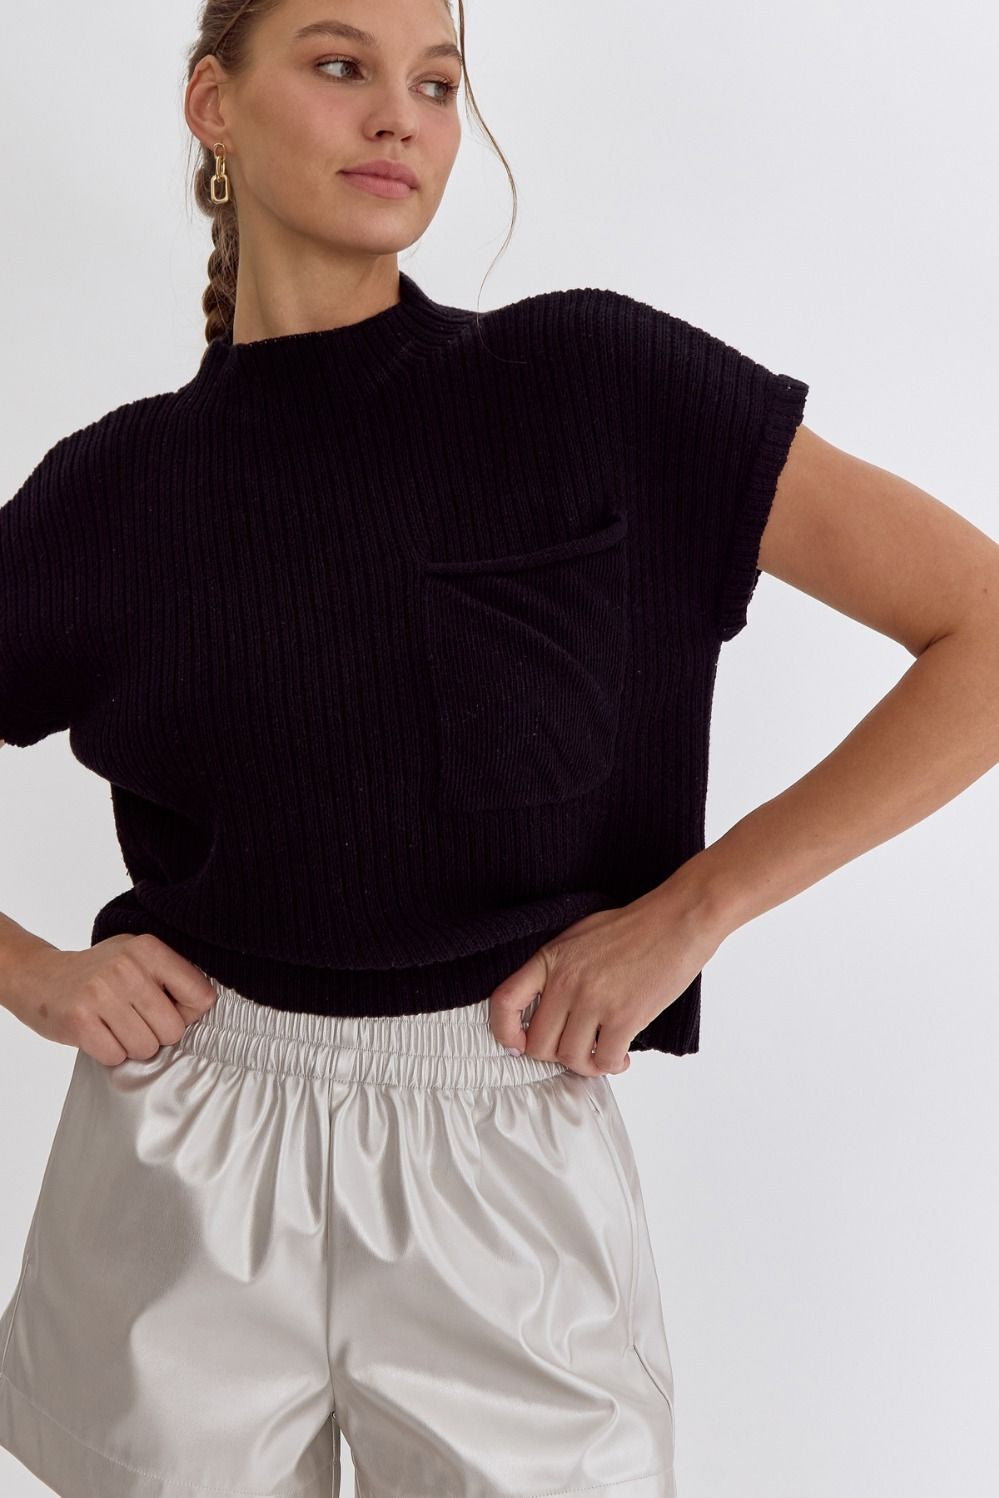 Stitching It Up Sweater - Black